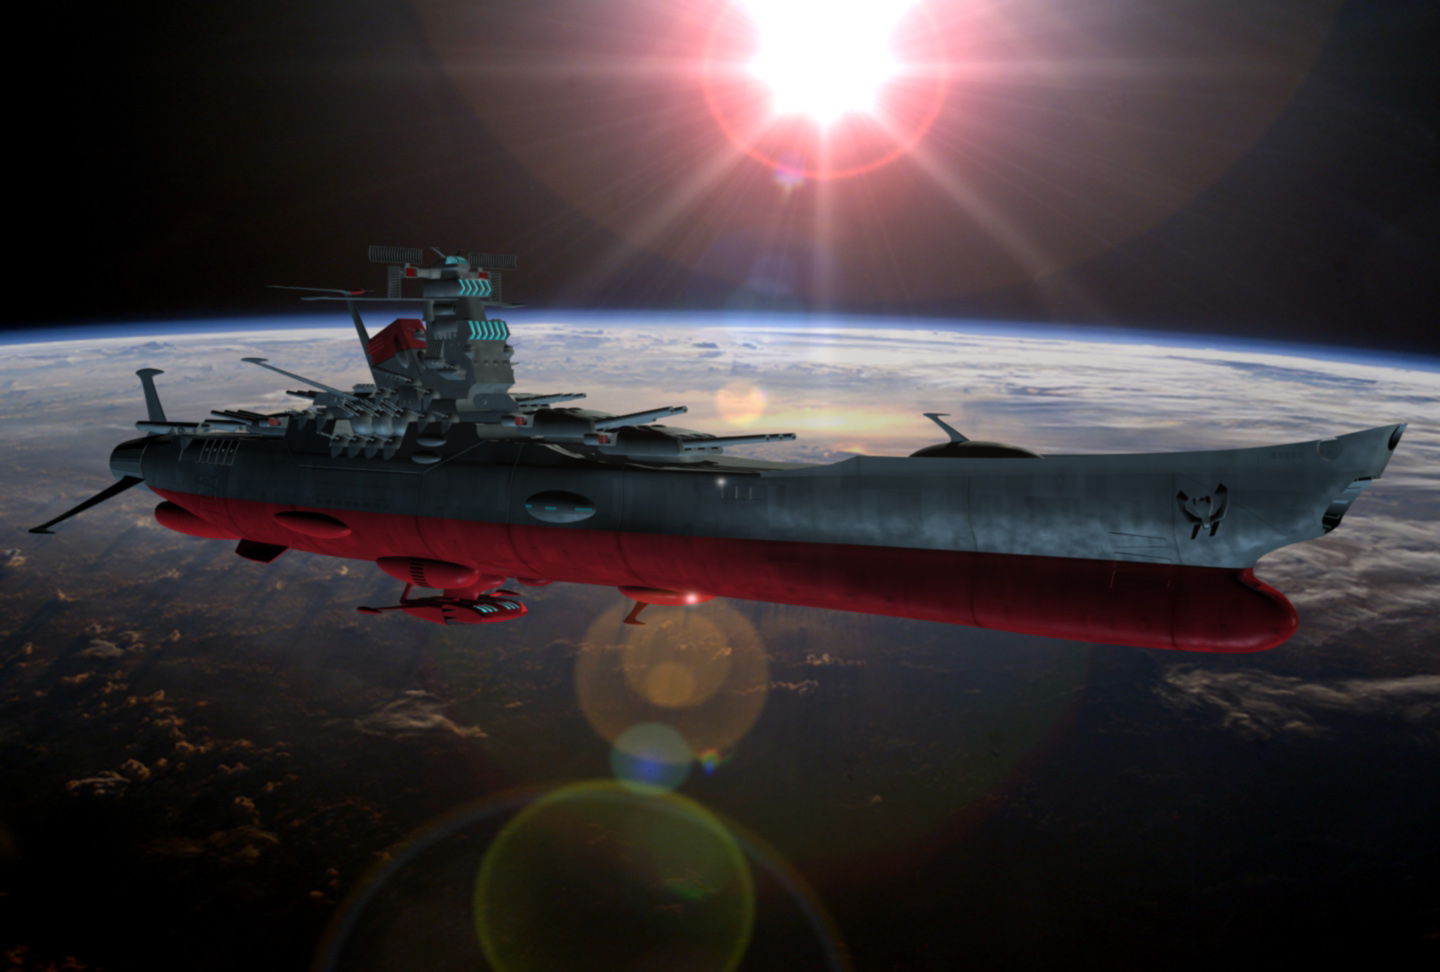  yamato space battleship yamato